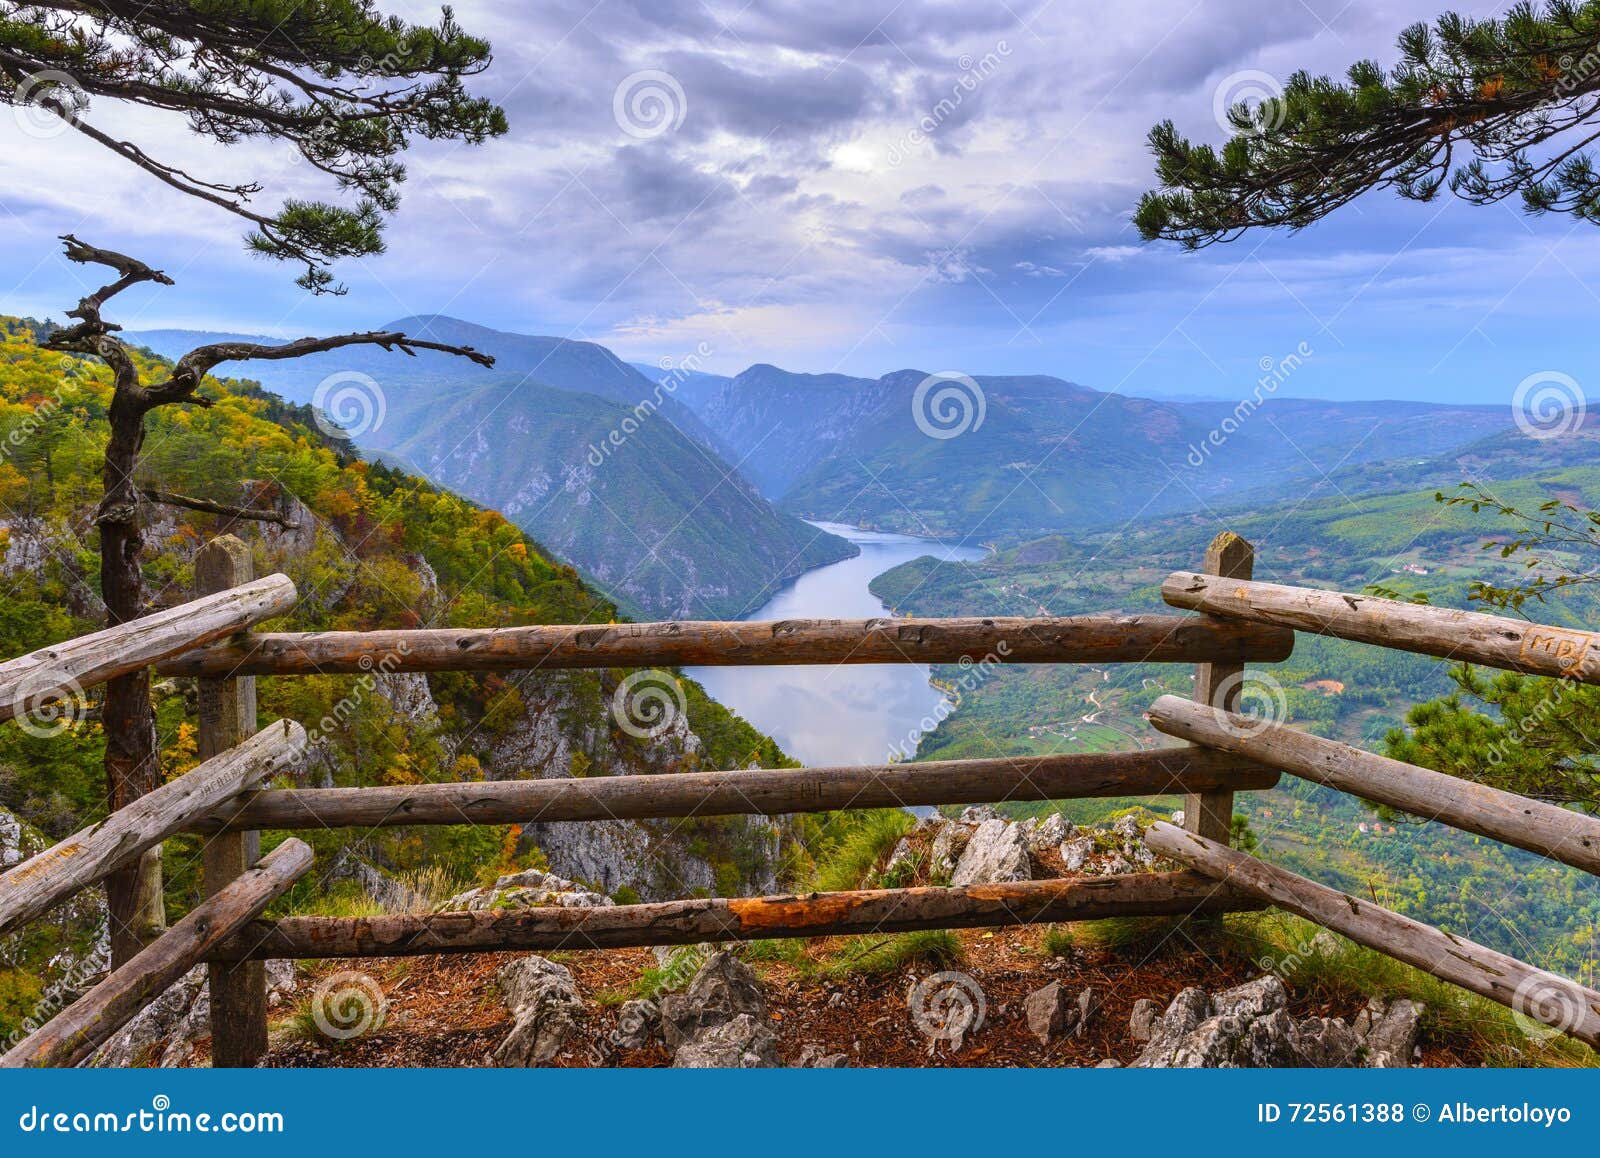 banjska stena viewpoint at tara national park, serbia